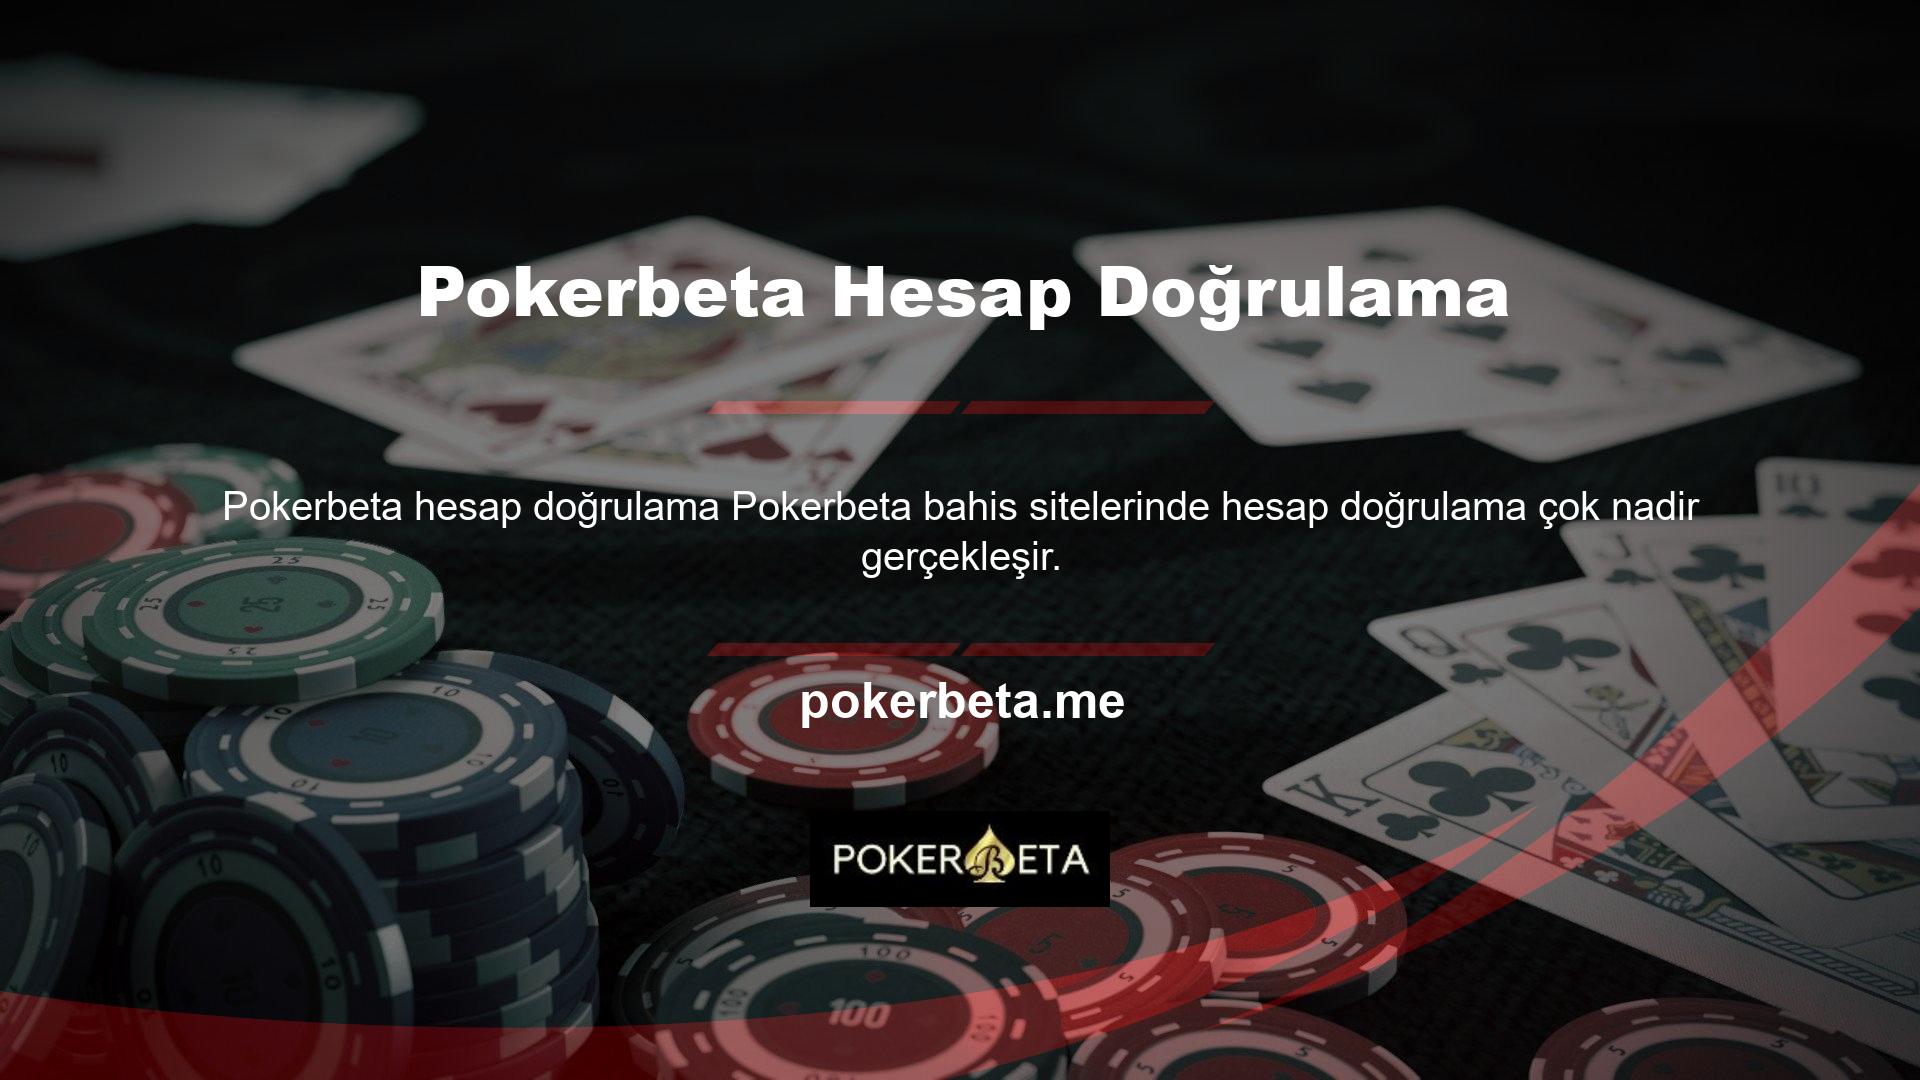 Hesabınızla tam olarak ne yaptığınızı görmek için Pokerbeta hesabınızı kontrol edin